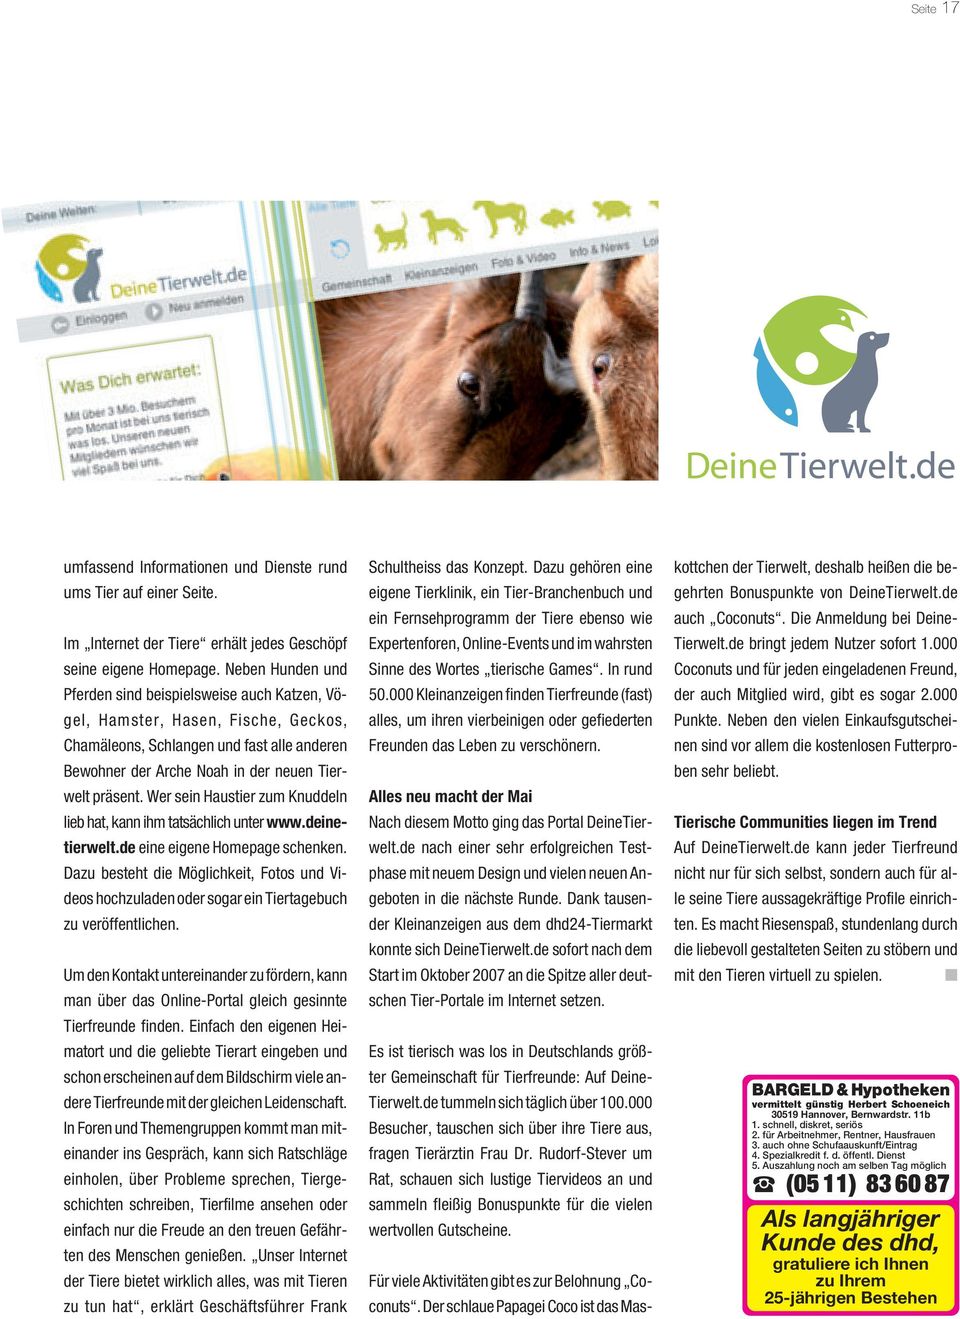 Wer sein Haustier zum Knuddeln lieb hat, kann ihm tatsächlich unter www.deinetierwelt.de eine eigene Homepage schenken.